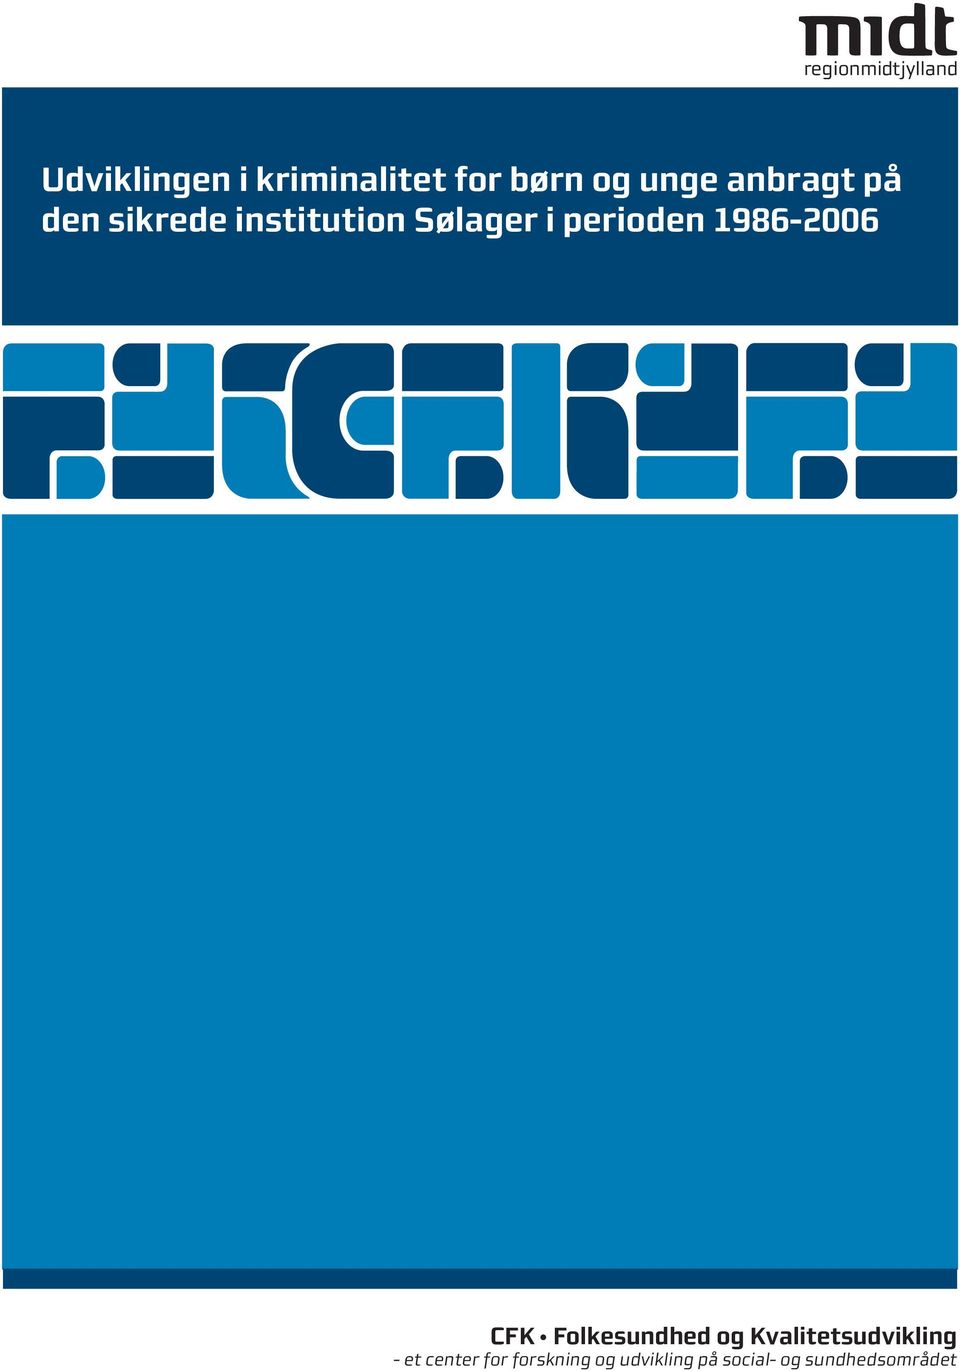 1986-2006 CFK Folkesundhed og Kvalitetsudvikling - et